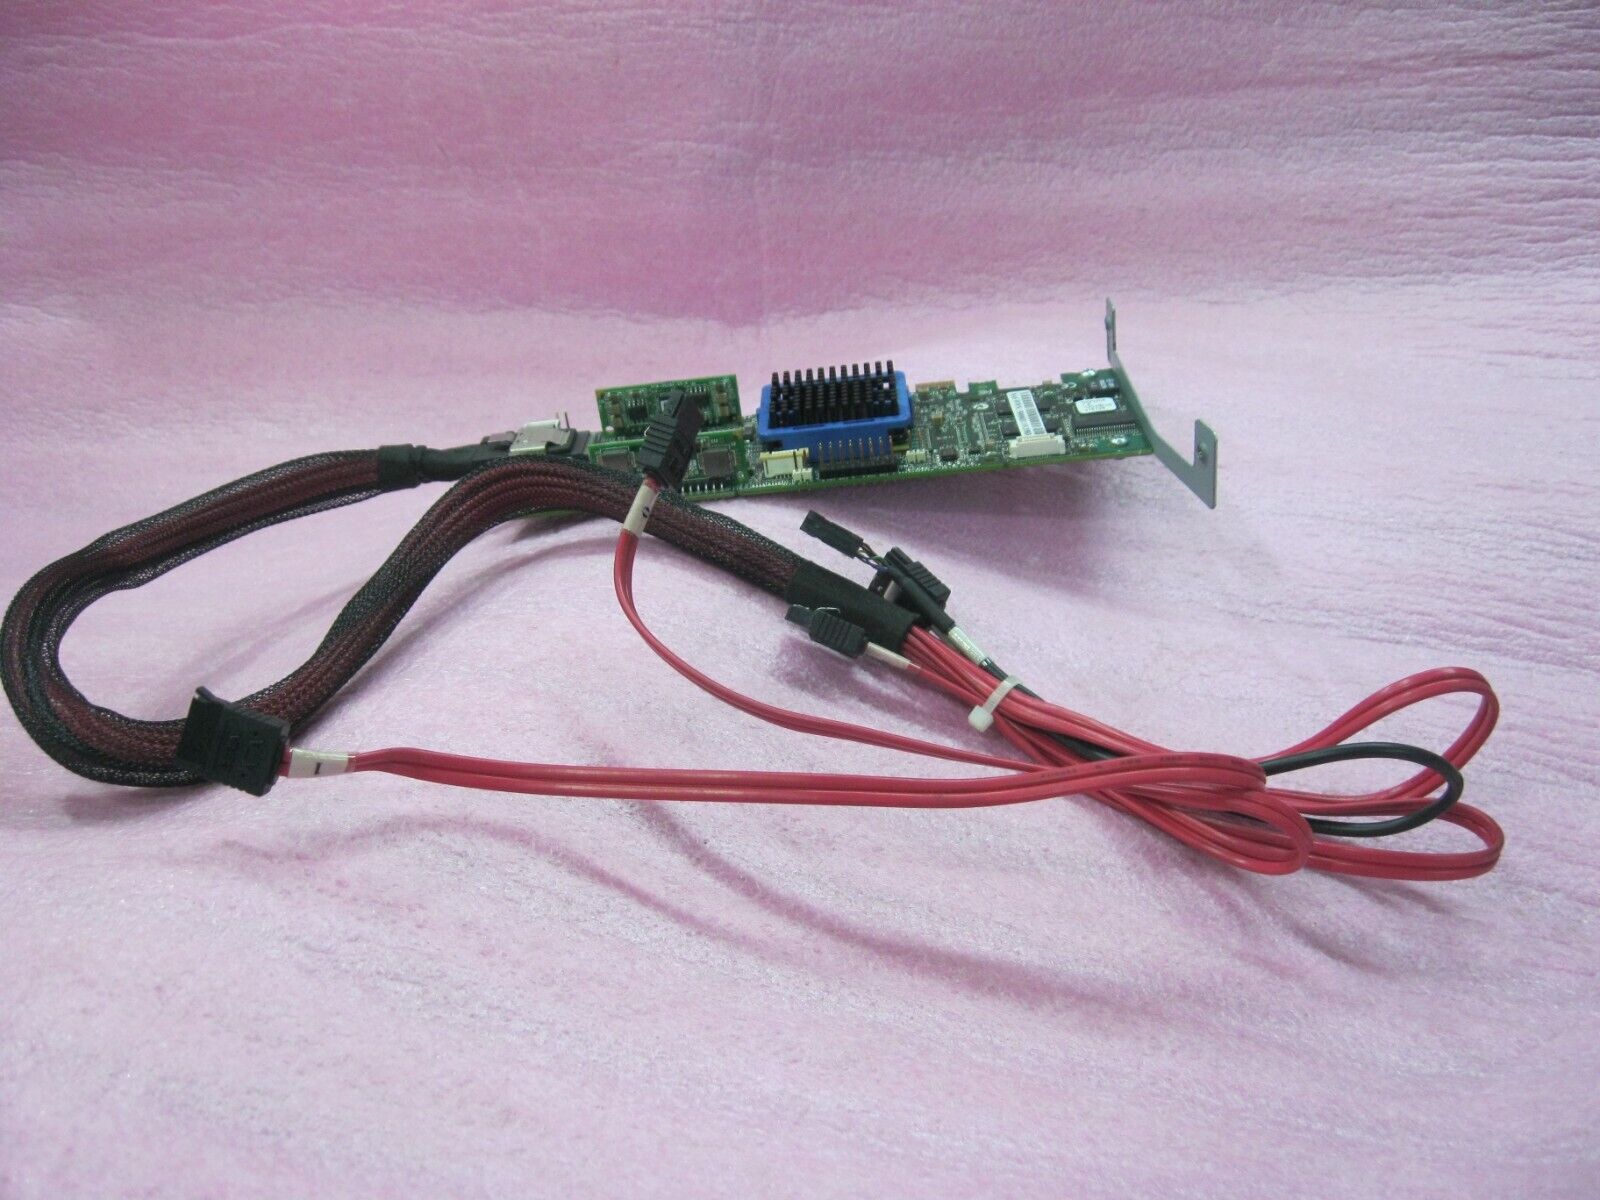 Adaptec  ASR-3405 128MB 4 Port PCIe SAS/SATA RAID Card W/Cable - L2803-C